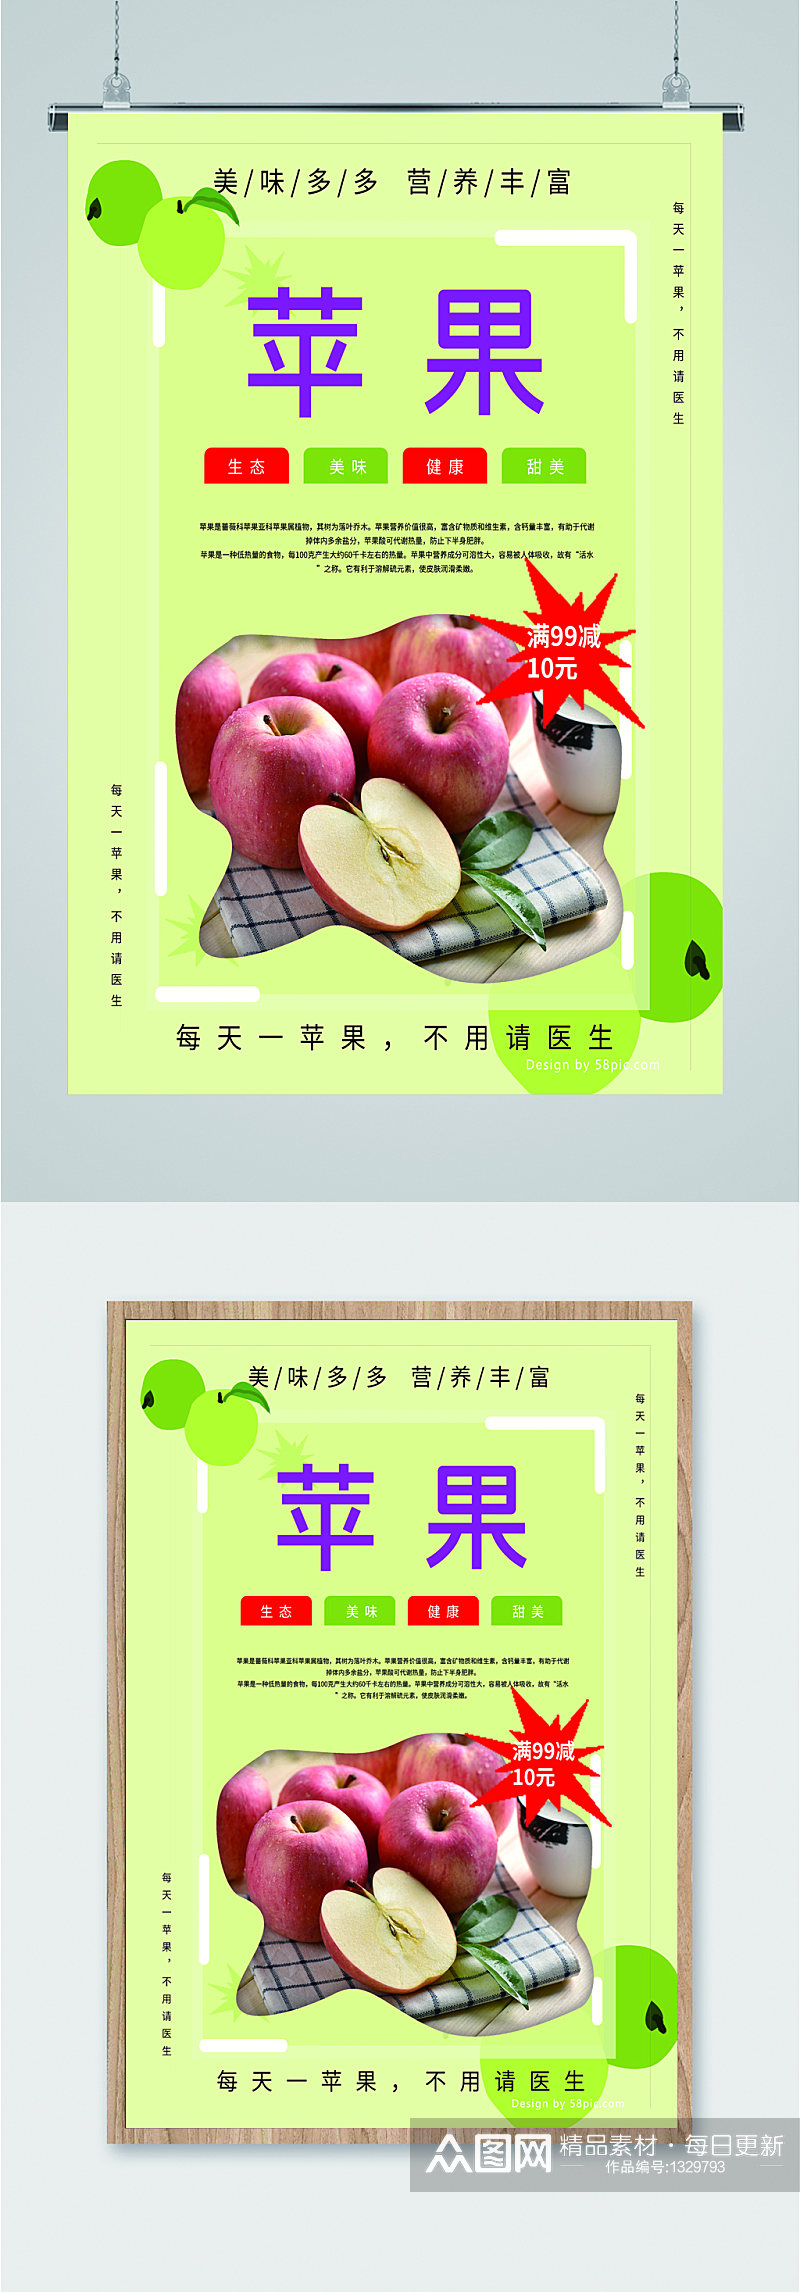 苹果水果促销活动海报素材